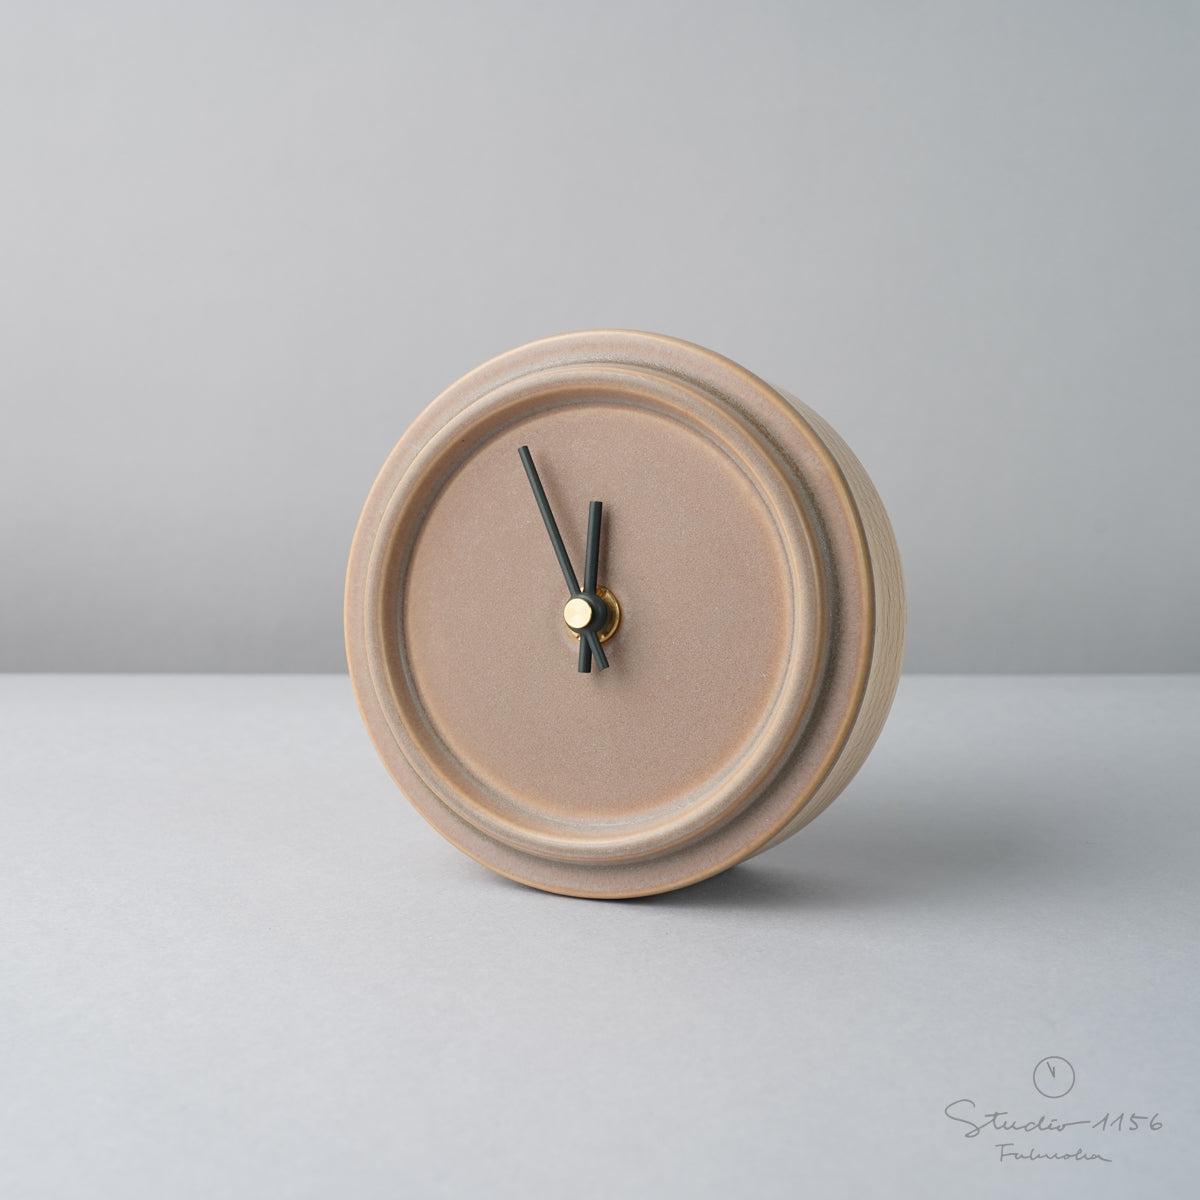 美濃焼 Baum 陶器時計 置き時計 電池付 ココアブラウン(Baum-04) SUGY Studio1156